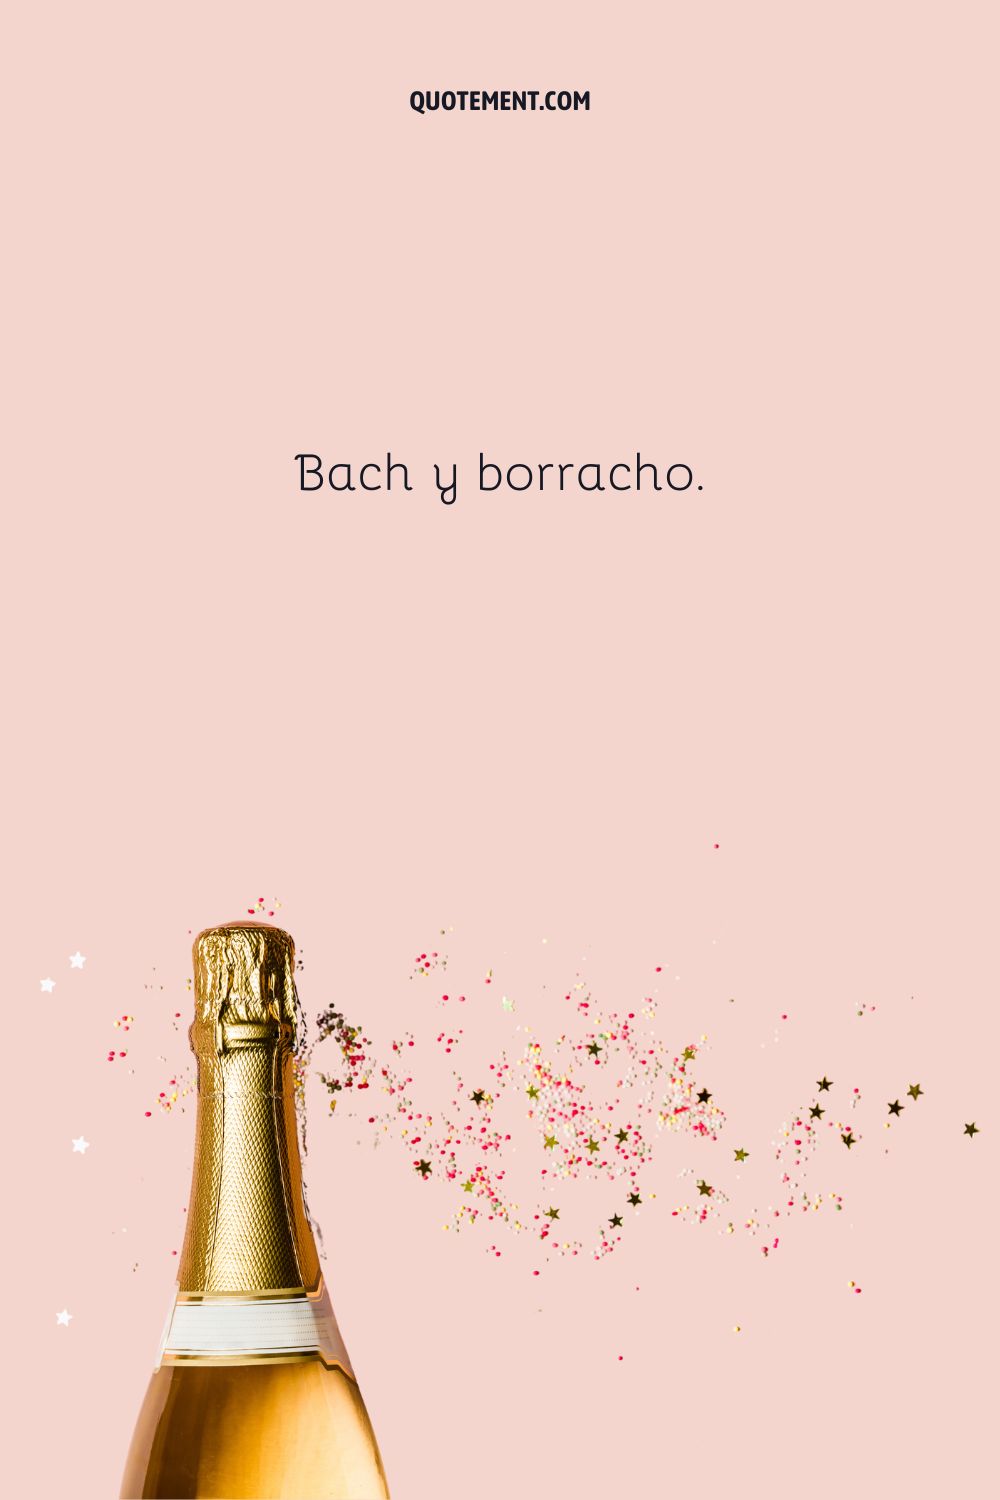 Bach y borracho.